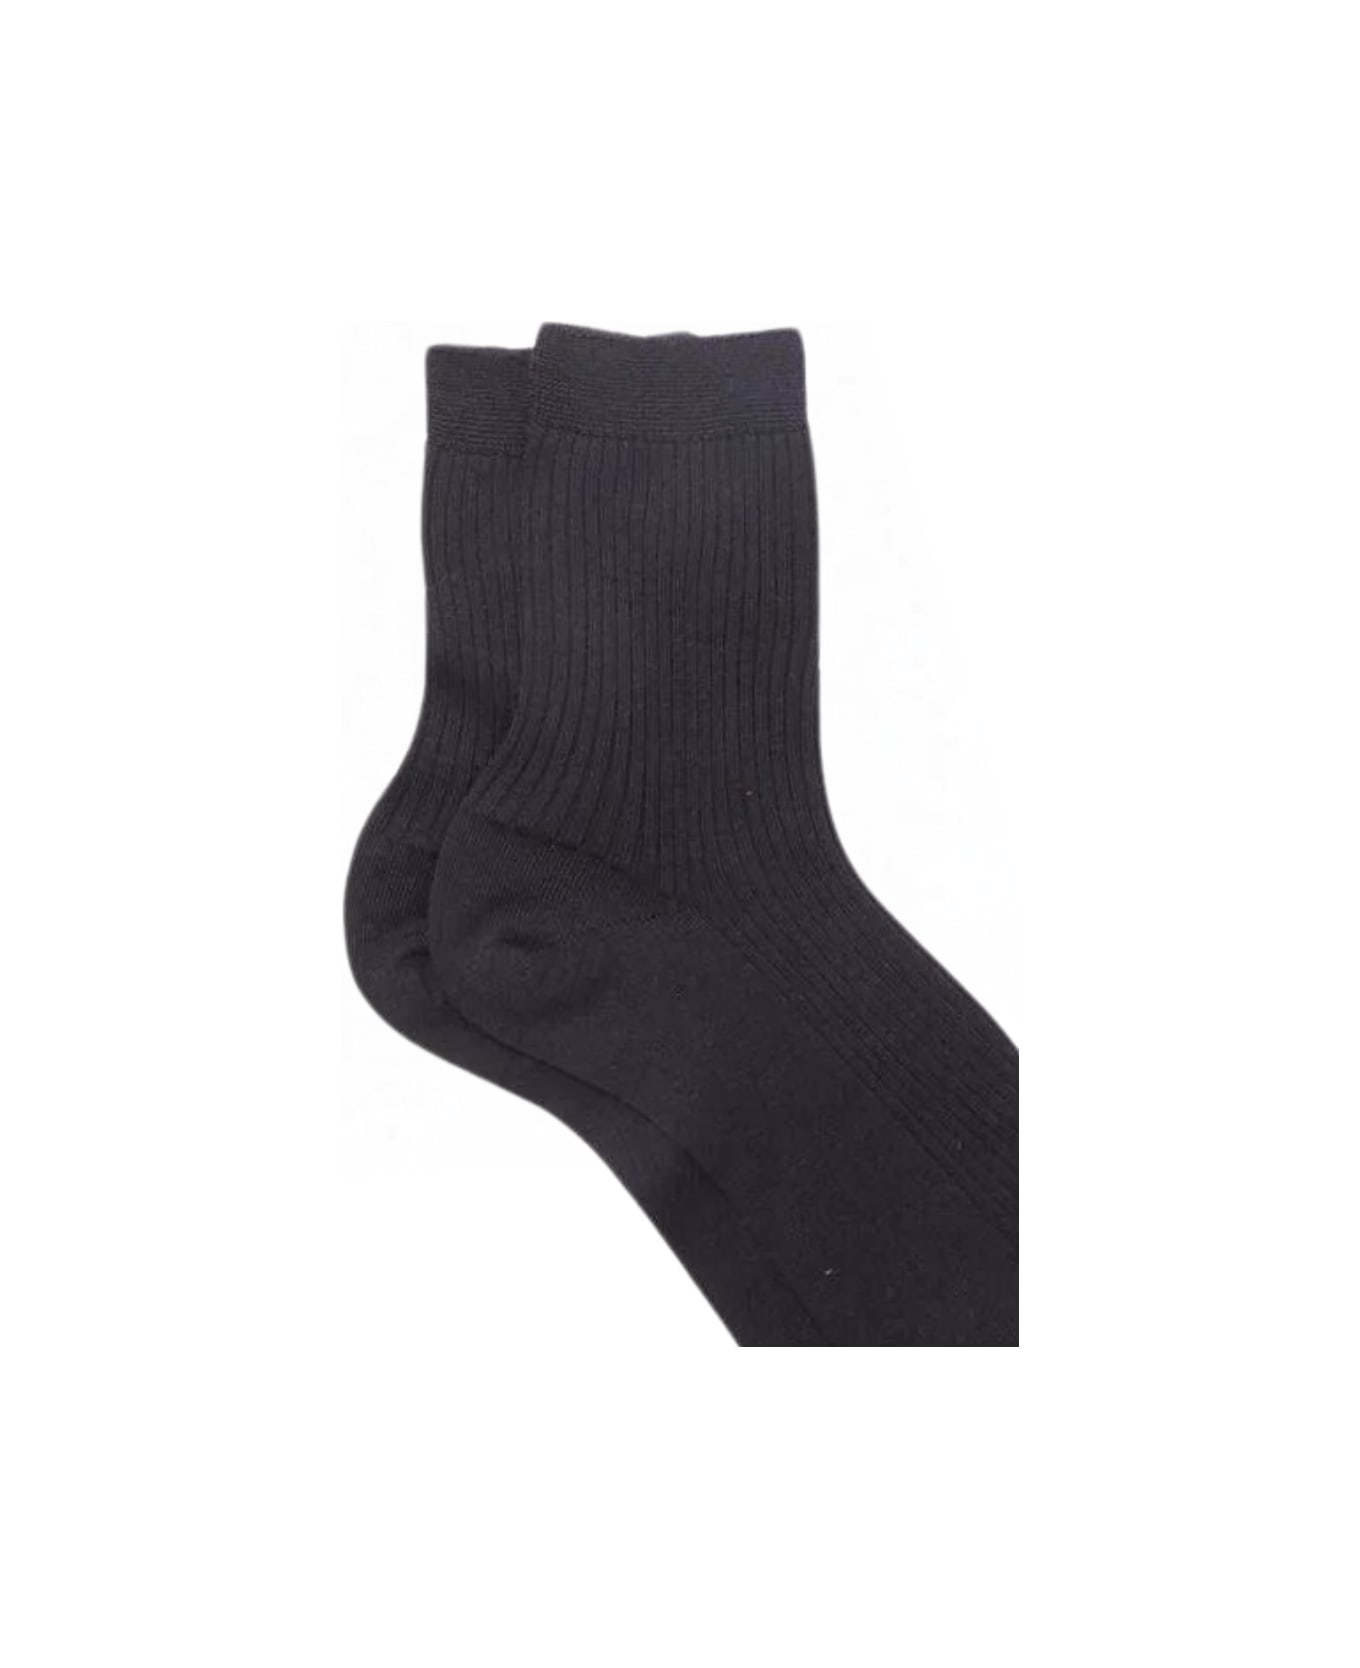 Maria La Rosa Wd013un4008 Socks - Black